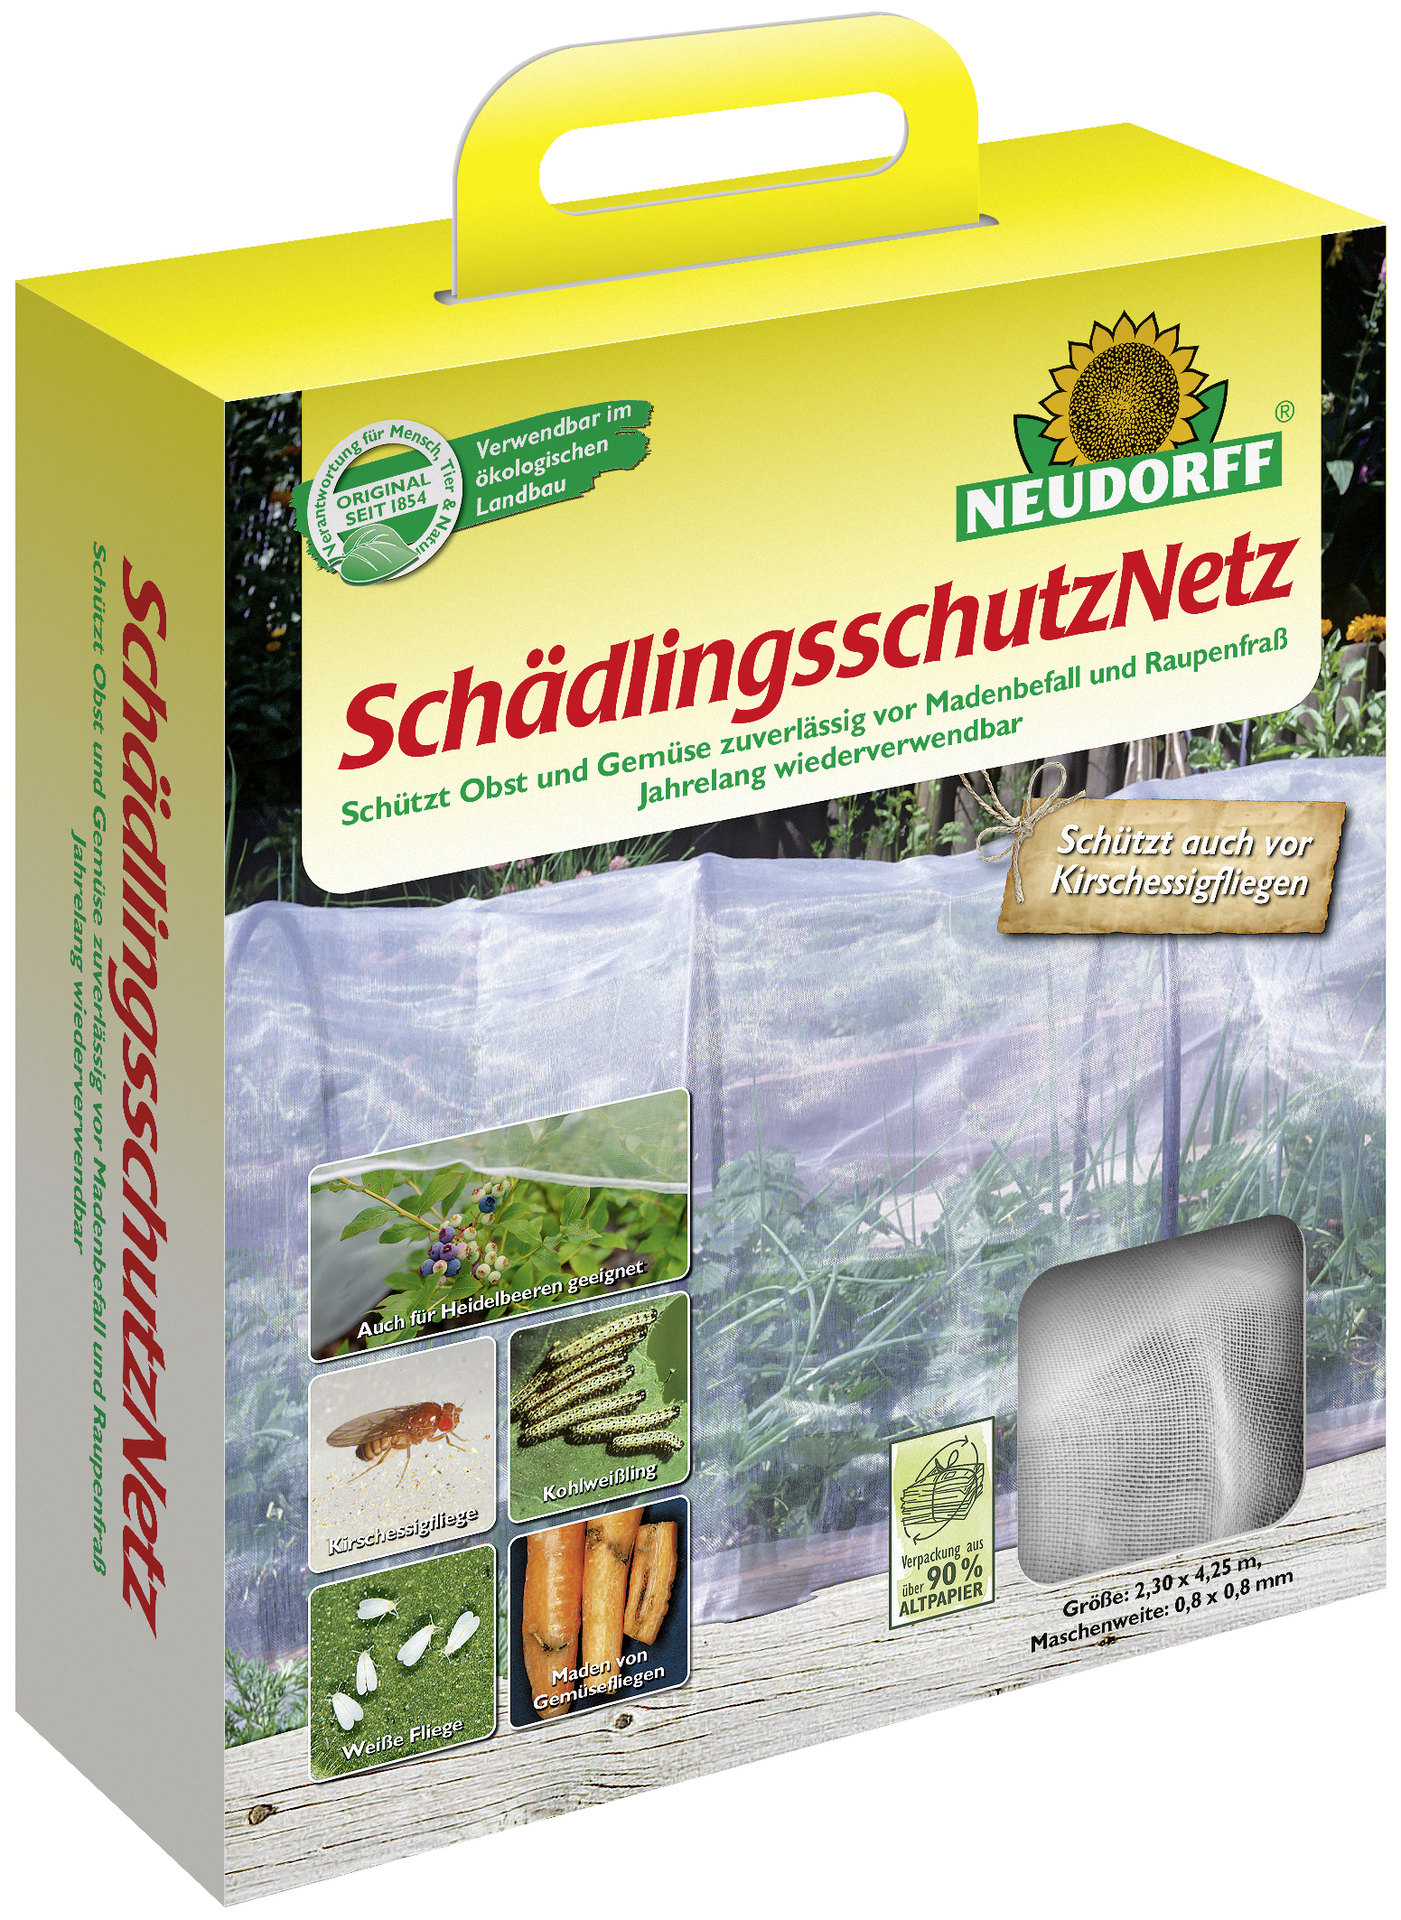 W. Neudorff GmbH KG Schädlingsschutz Netz